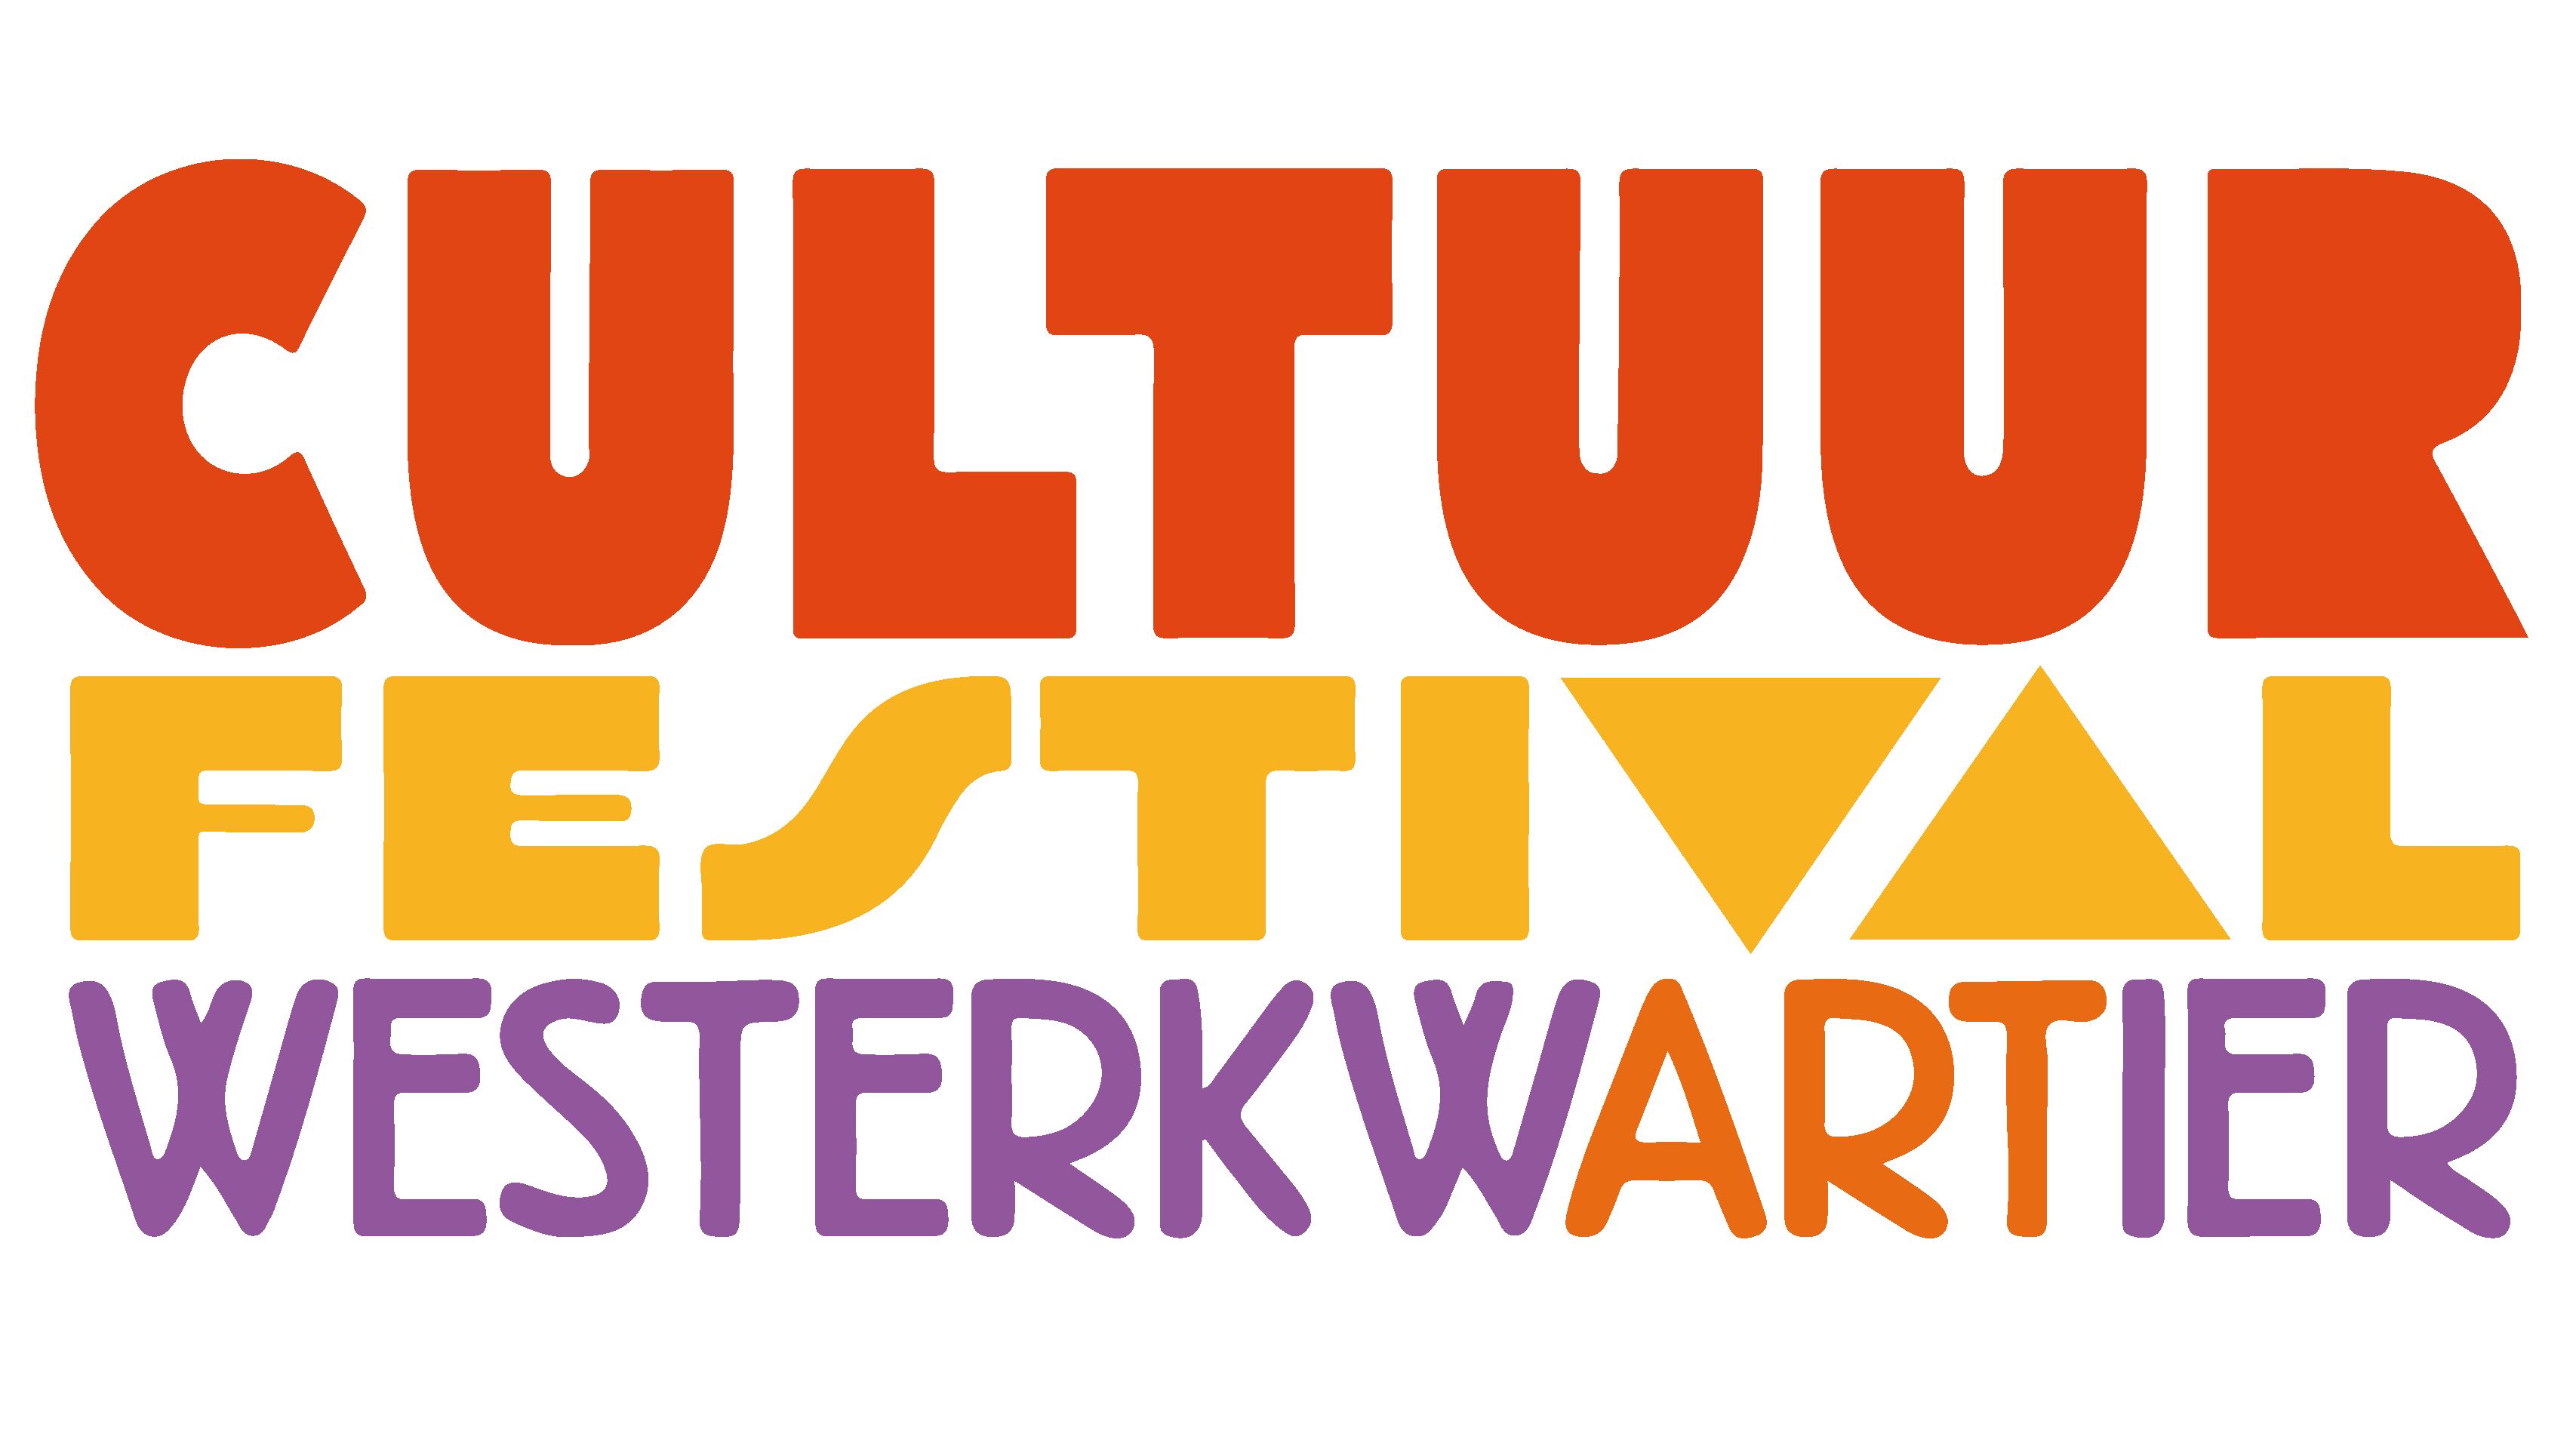 17 september: Cultuur Festival Westerkwartier